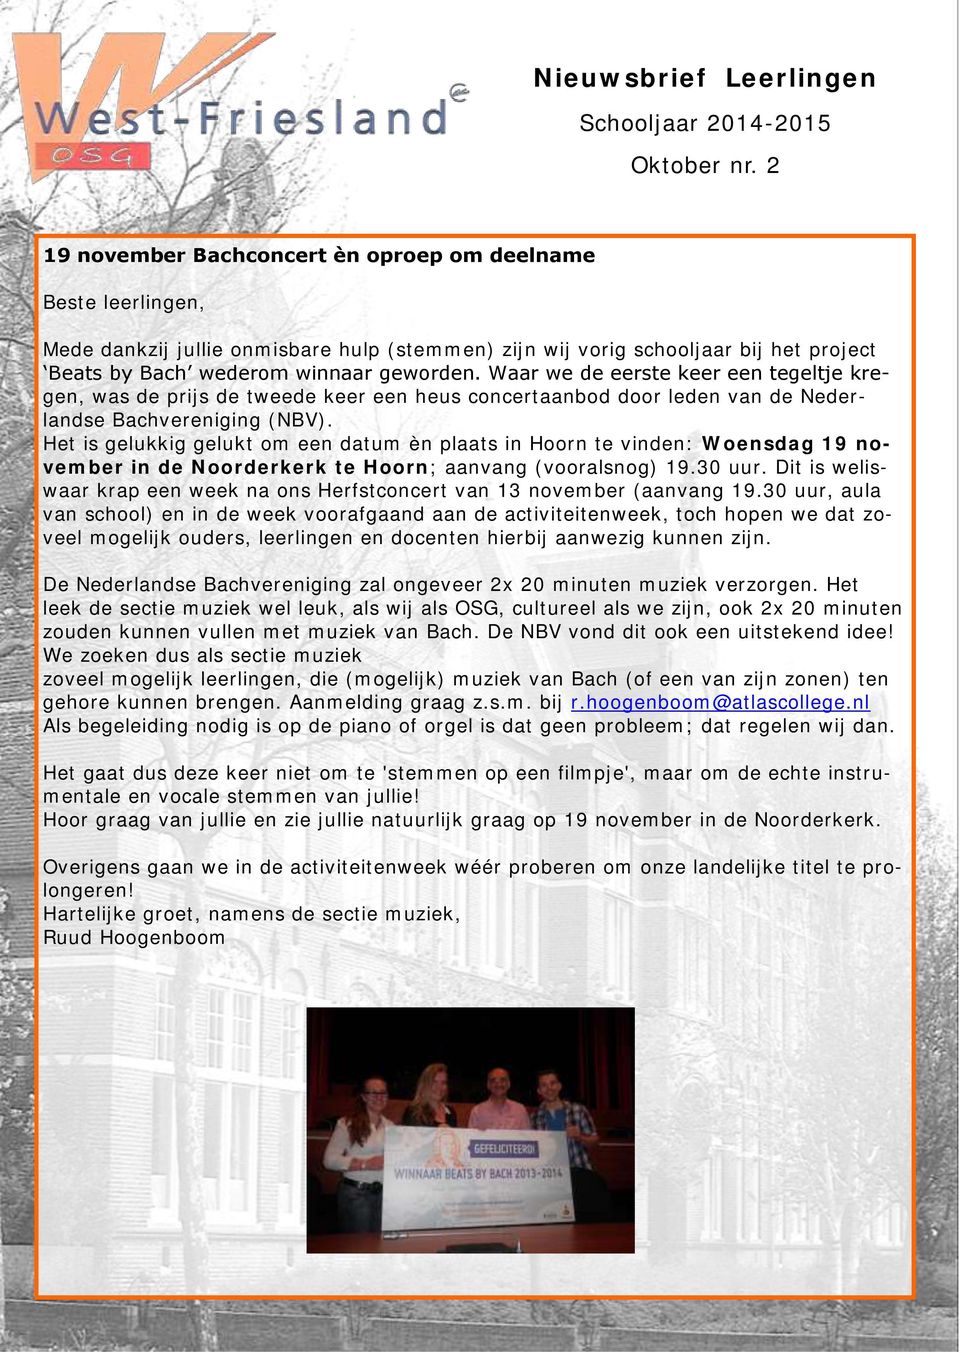 Het is gelukkig gelukt om een datum èn plaats in Hoorn te vinden: Woensdag 19 november in de Noorderkerk te Hoorn; aanvang (vooralsnog) 19.30 uur.